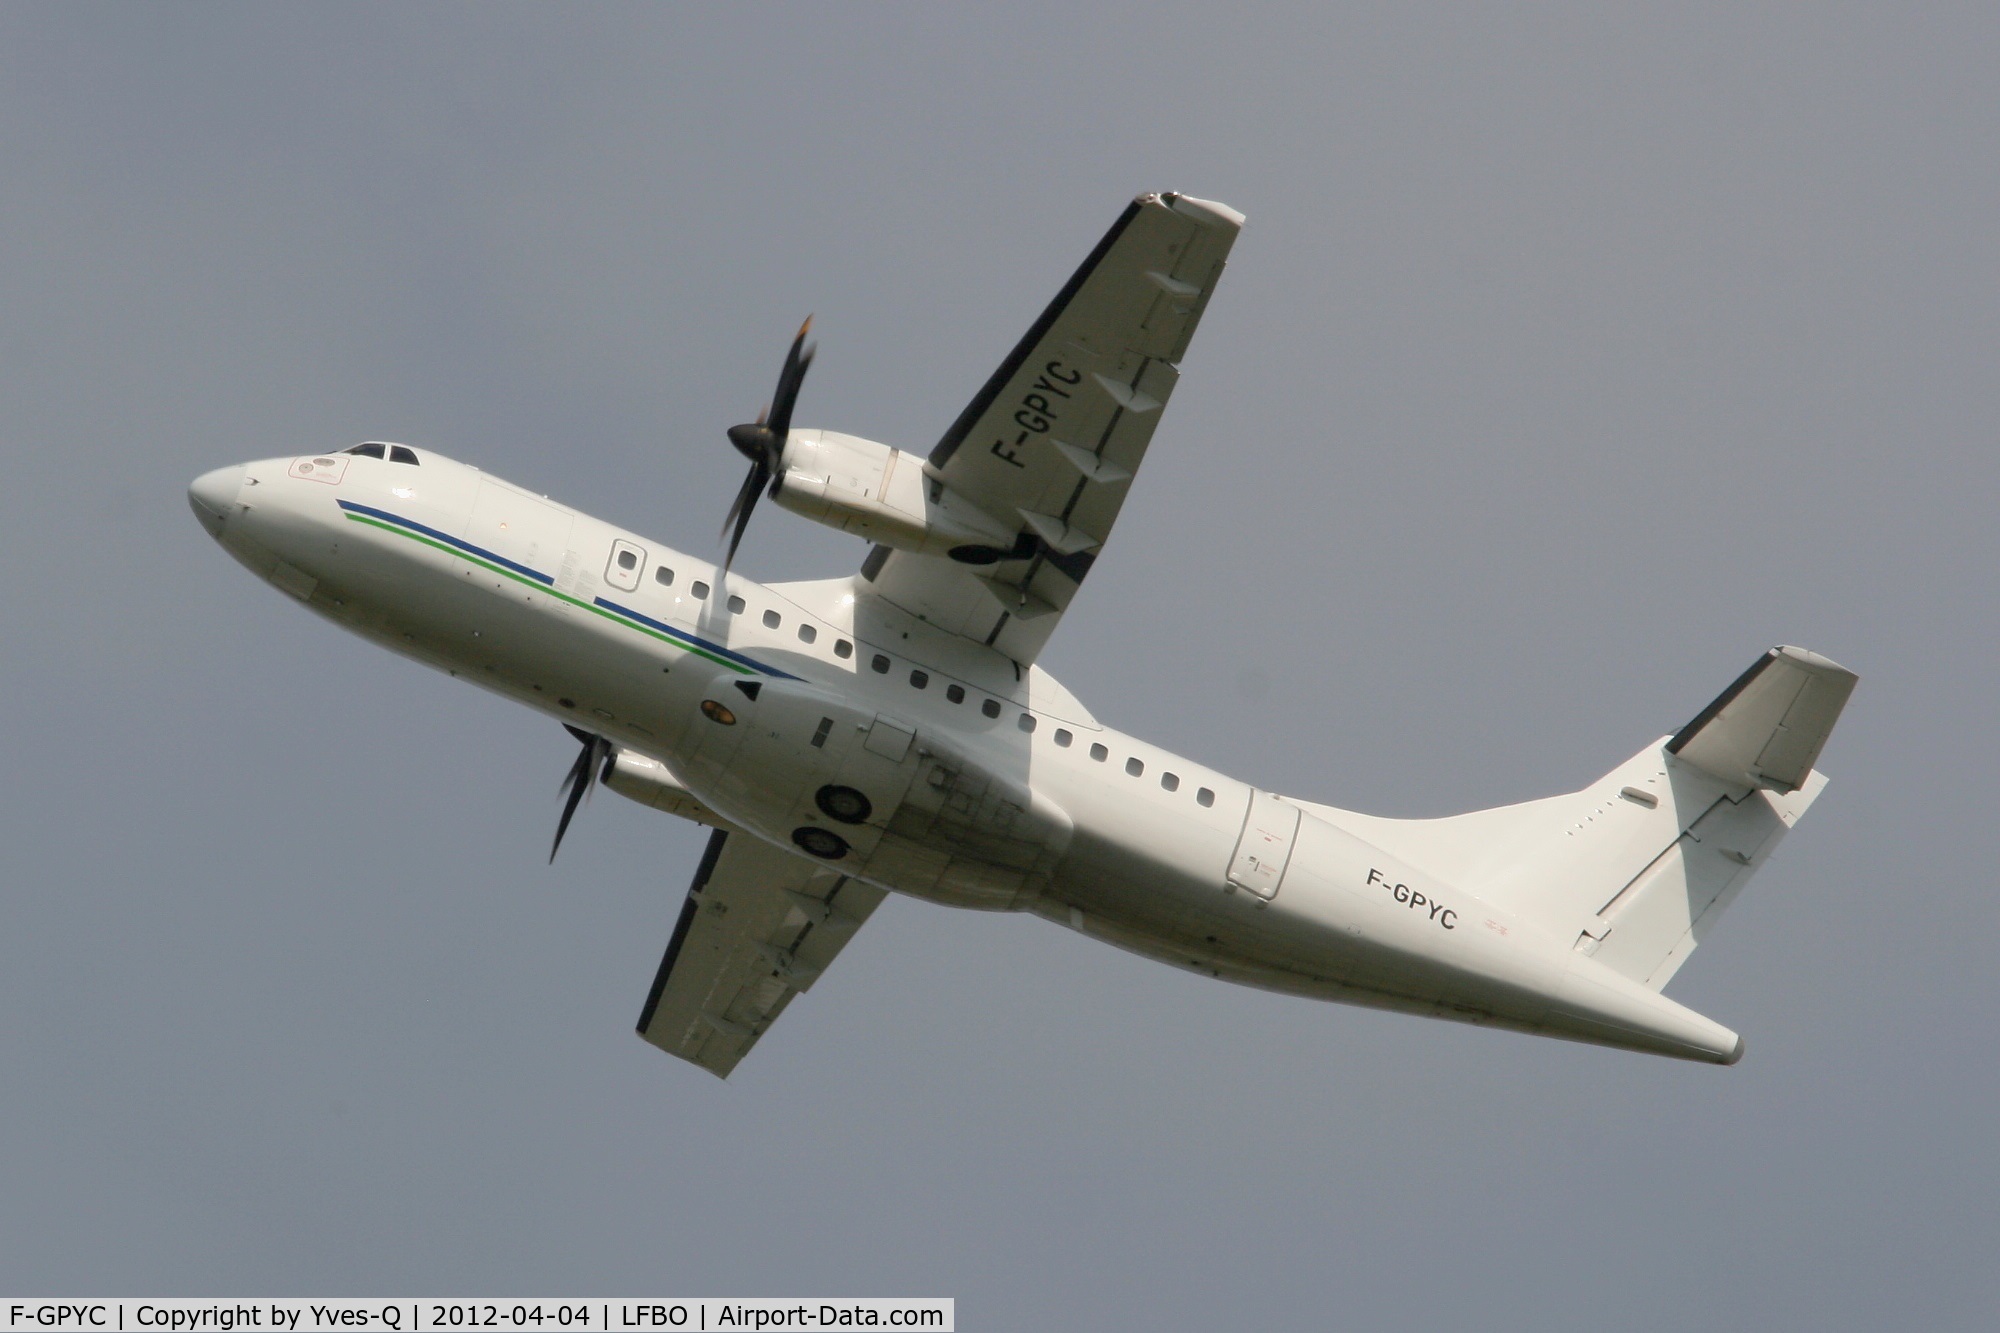 F-GPYC, 1996 ATR 42-500 C/N 484, ATR 42-500, Take-off Rwy 32R, Toulouse Blagnac Airport (LFBO-TLS)